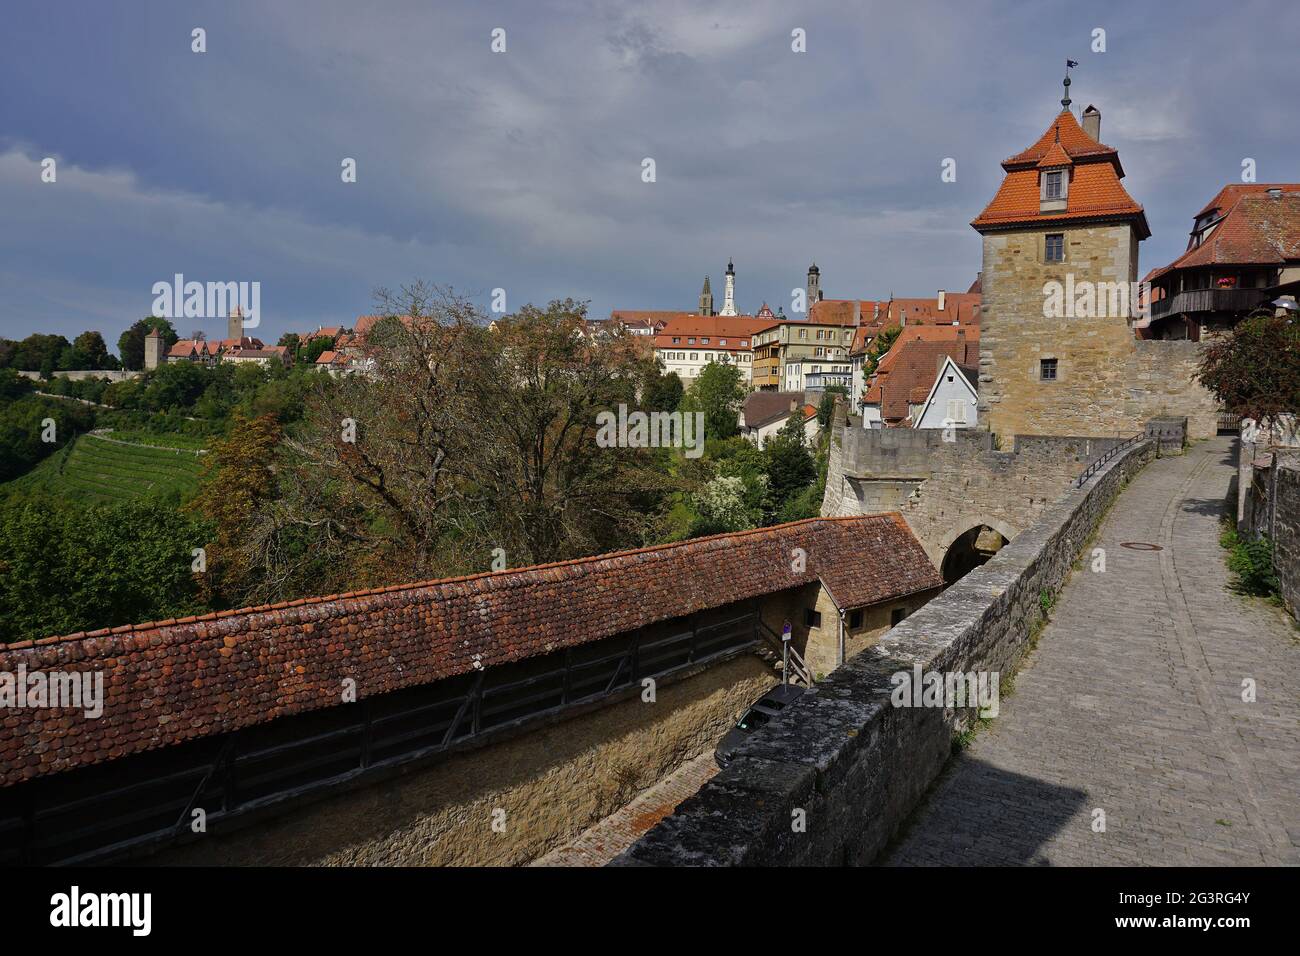 Historische Altstadt Rothenburg ob der Tauber, Deutschland Stockfoto